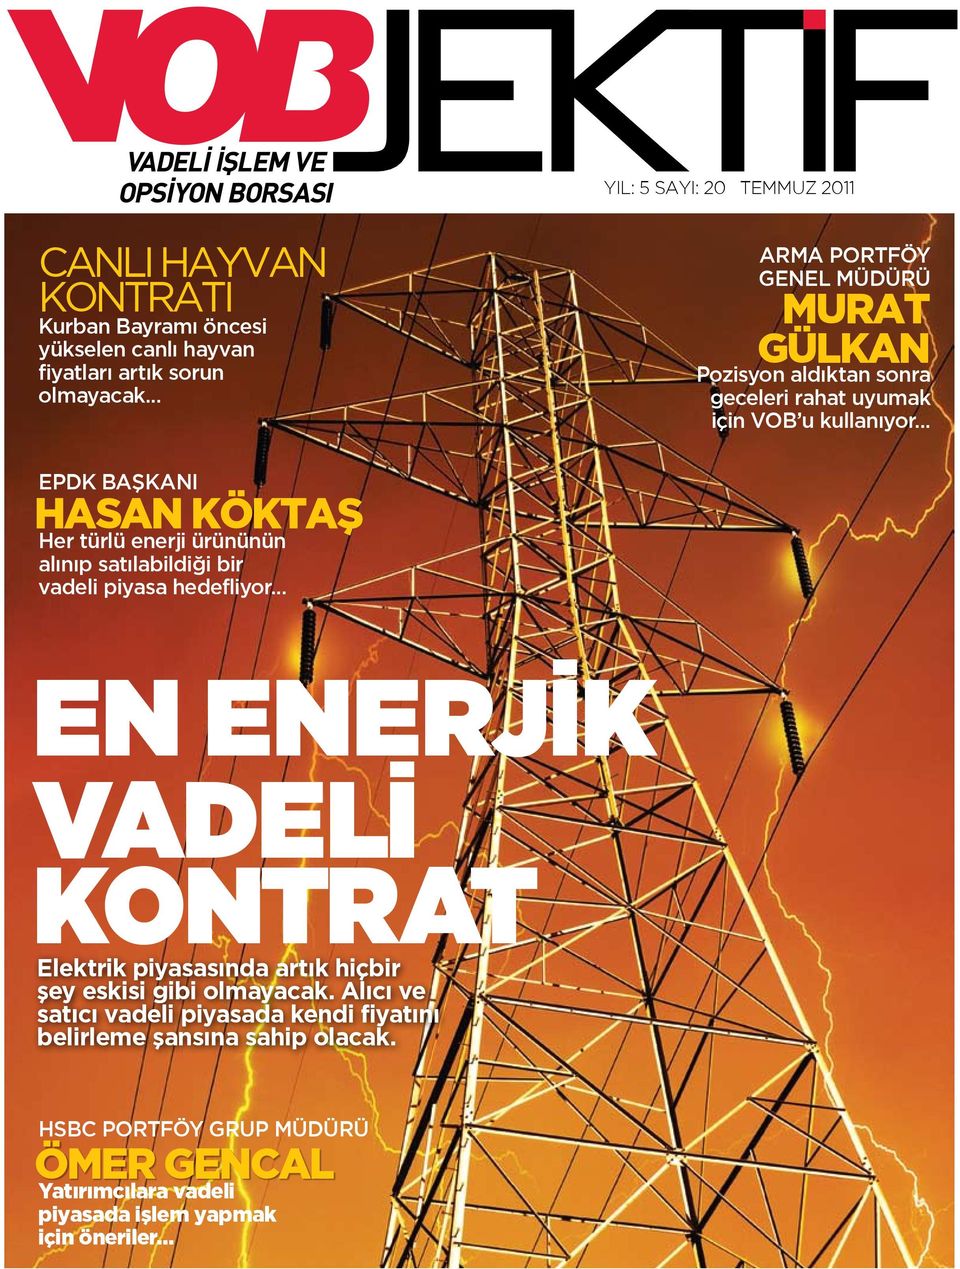 .. EPDK Başkanı Hasan Köktaş Her türlü enerji ürününün alınıp satılabildiği bir vadeli piyasa hedefliyor.